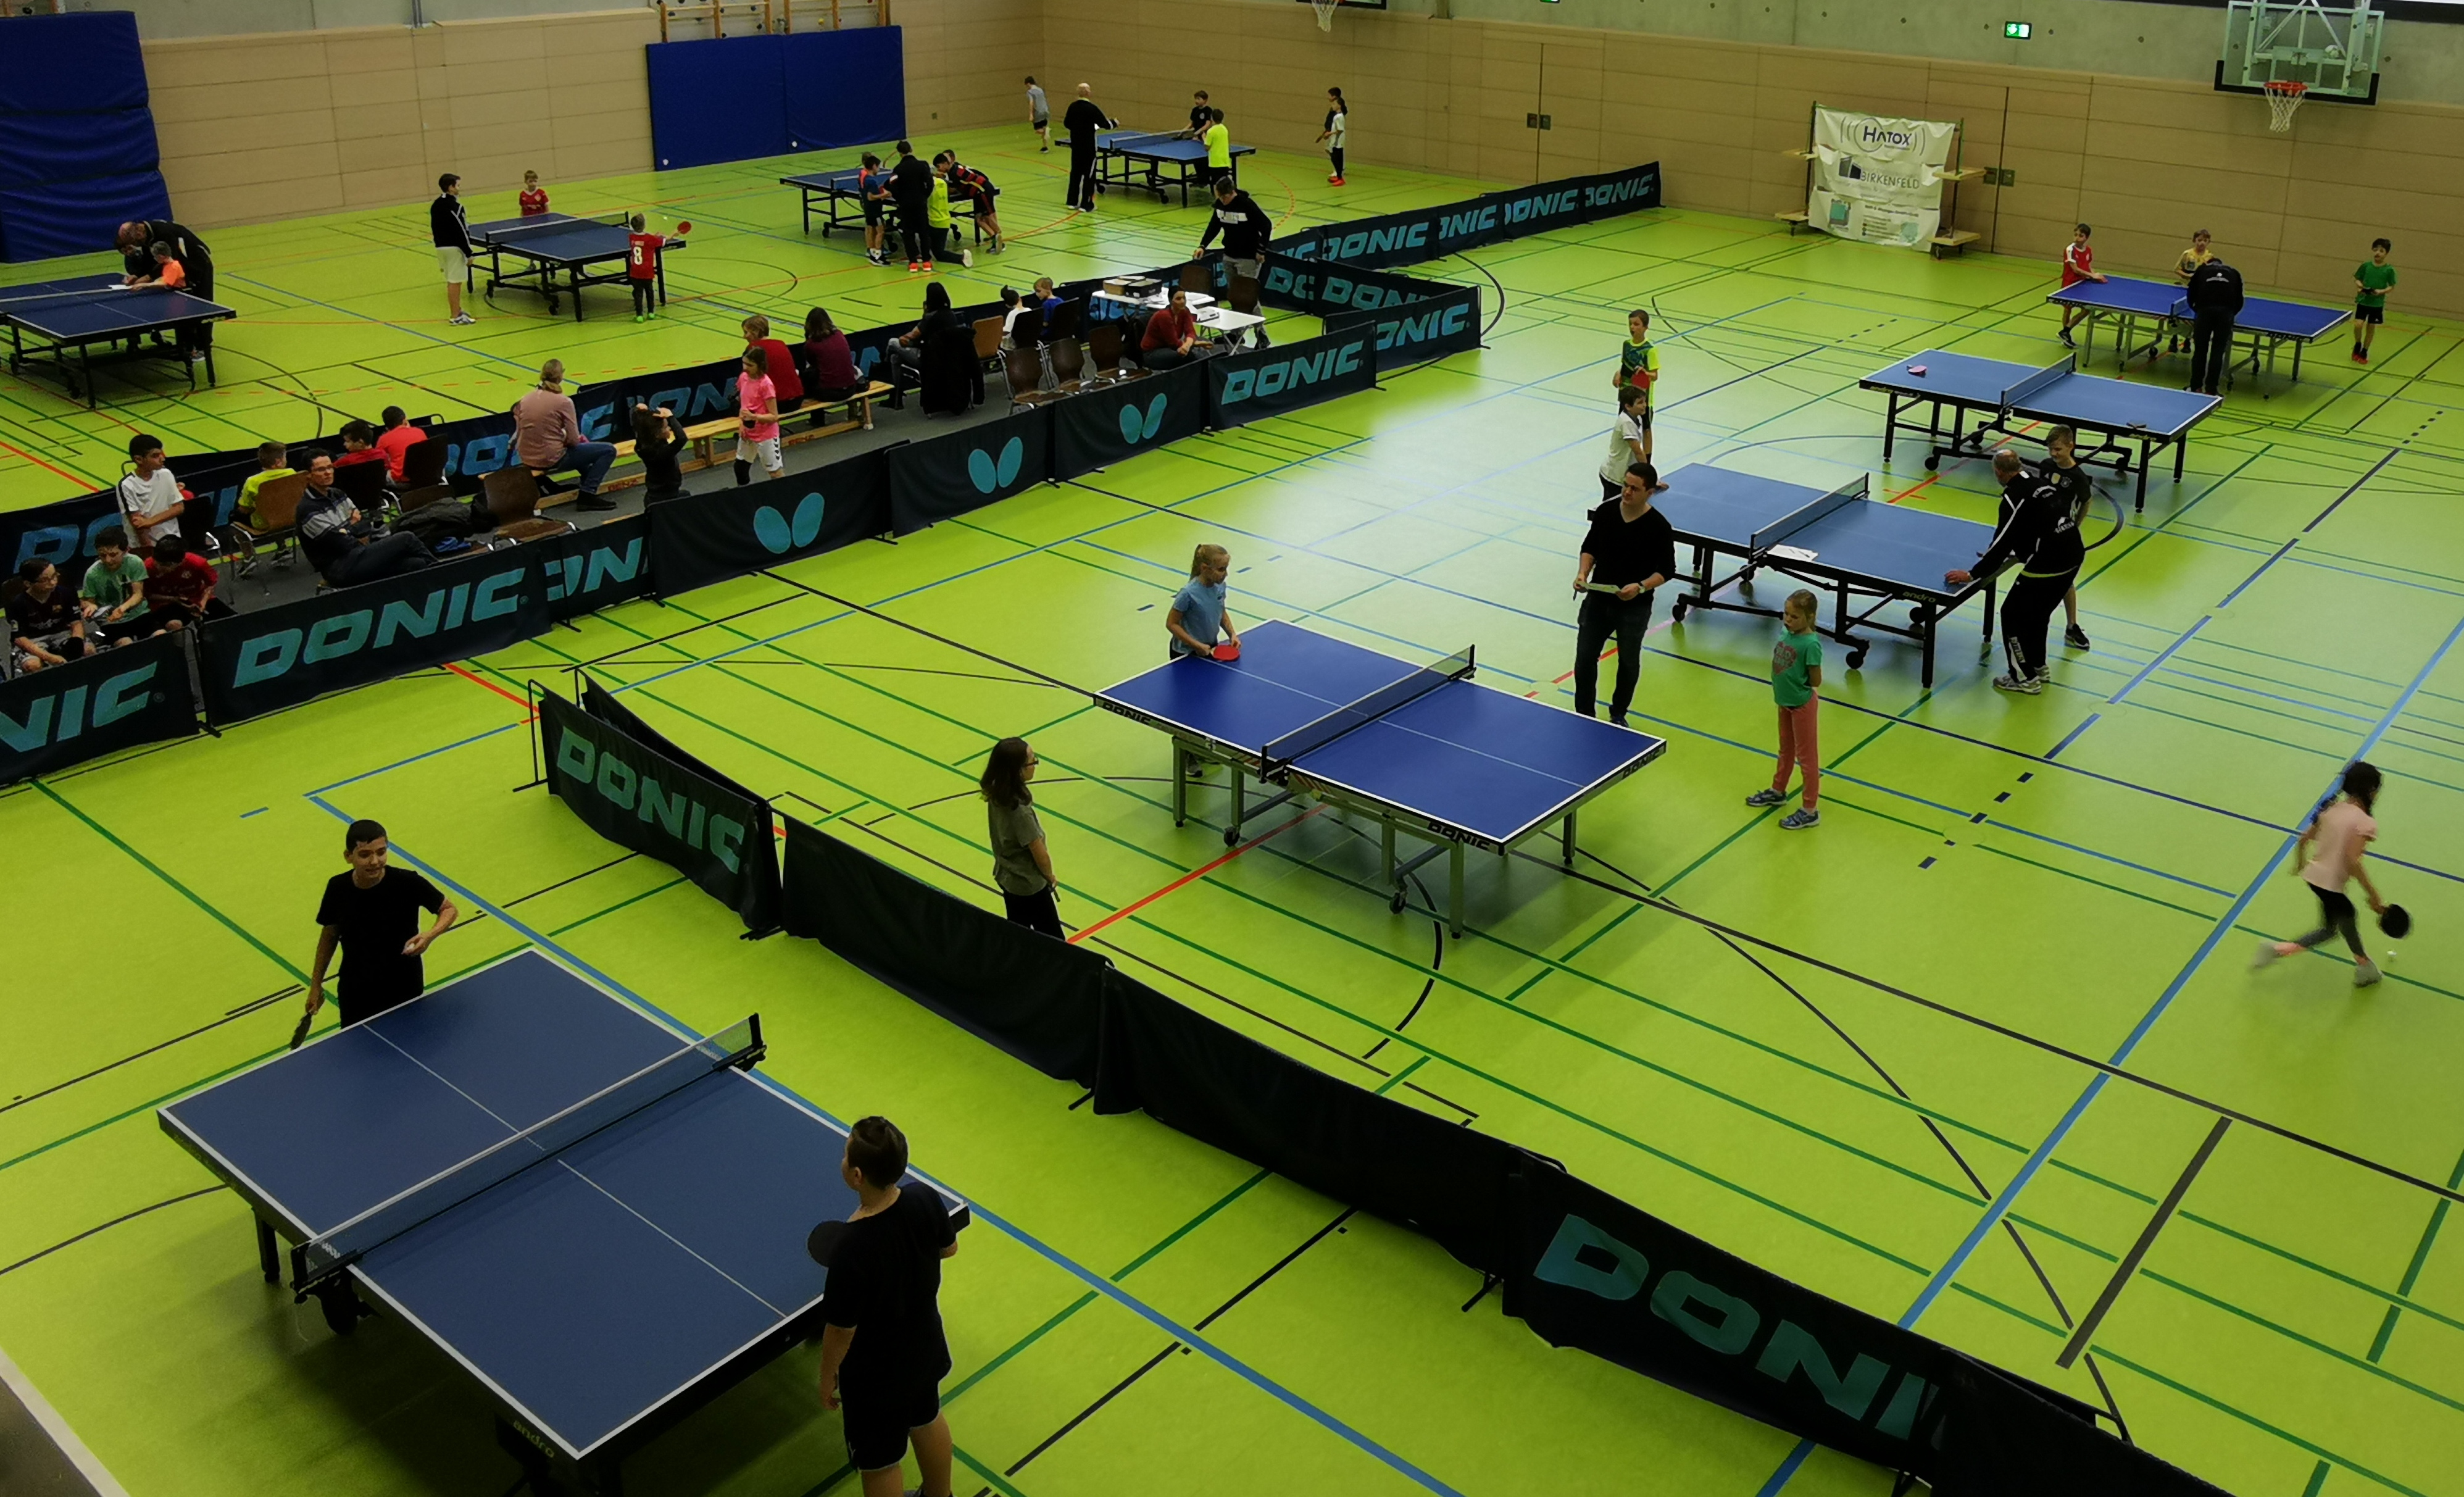 Ortsentscheid der Tischtennis-mini-Meisterschaften in Birkenfeld